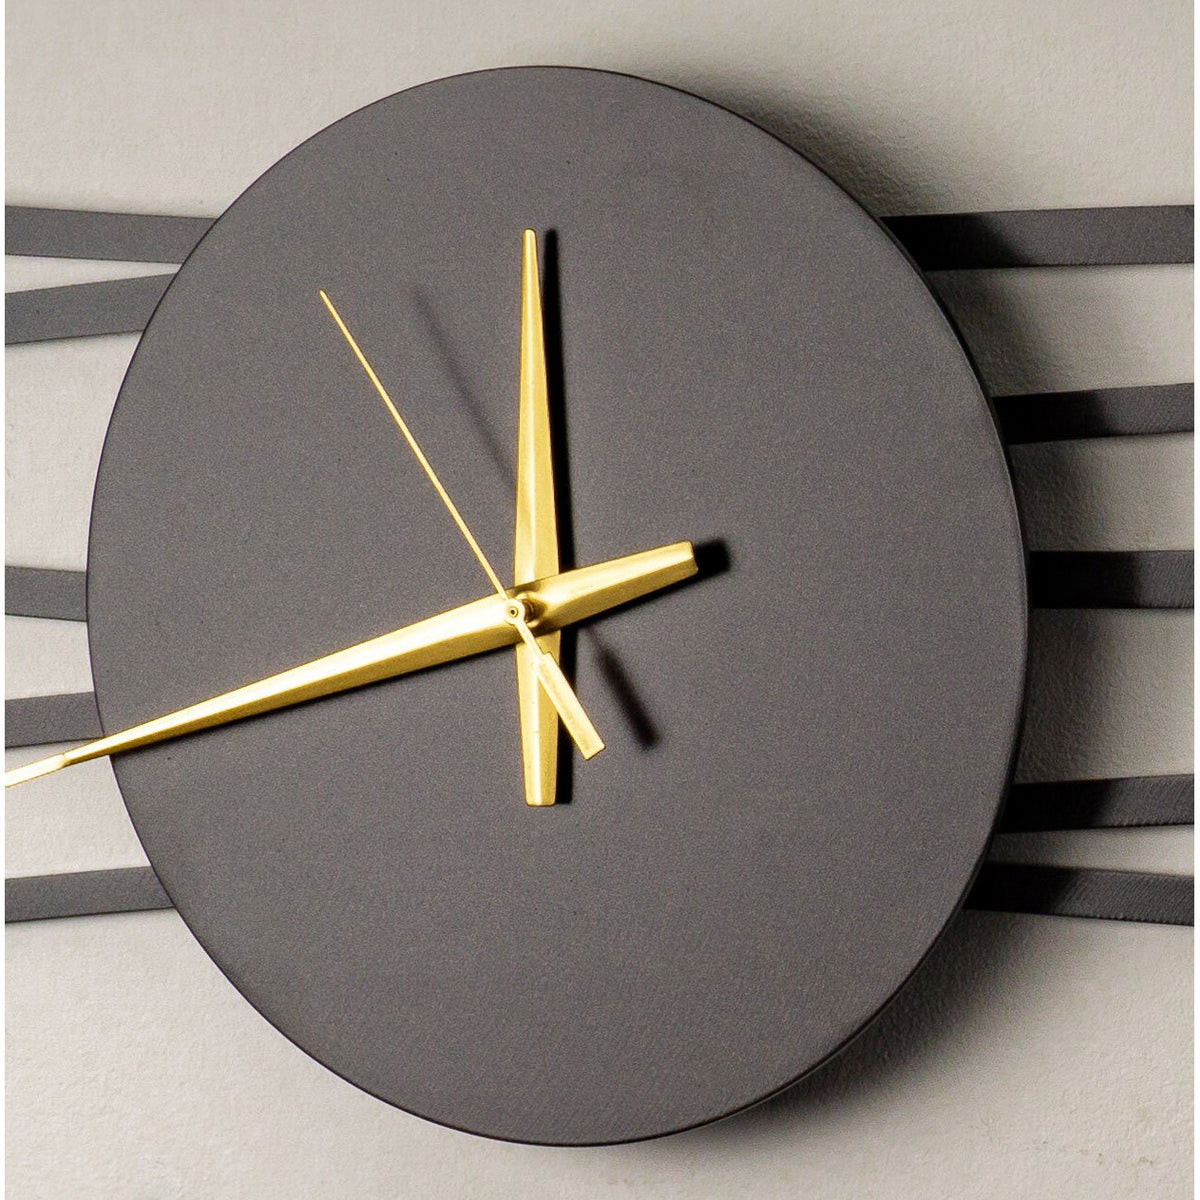 Zonnebloem Wall Clock by Brazen Design Studio